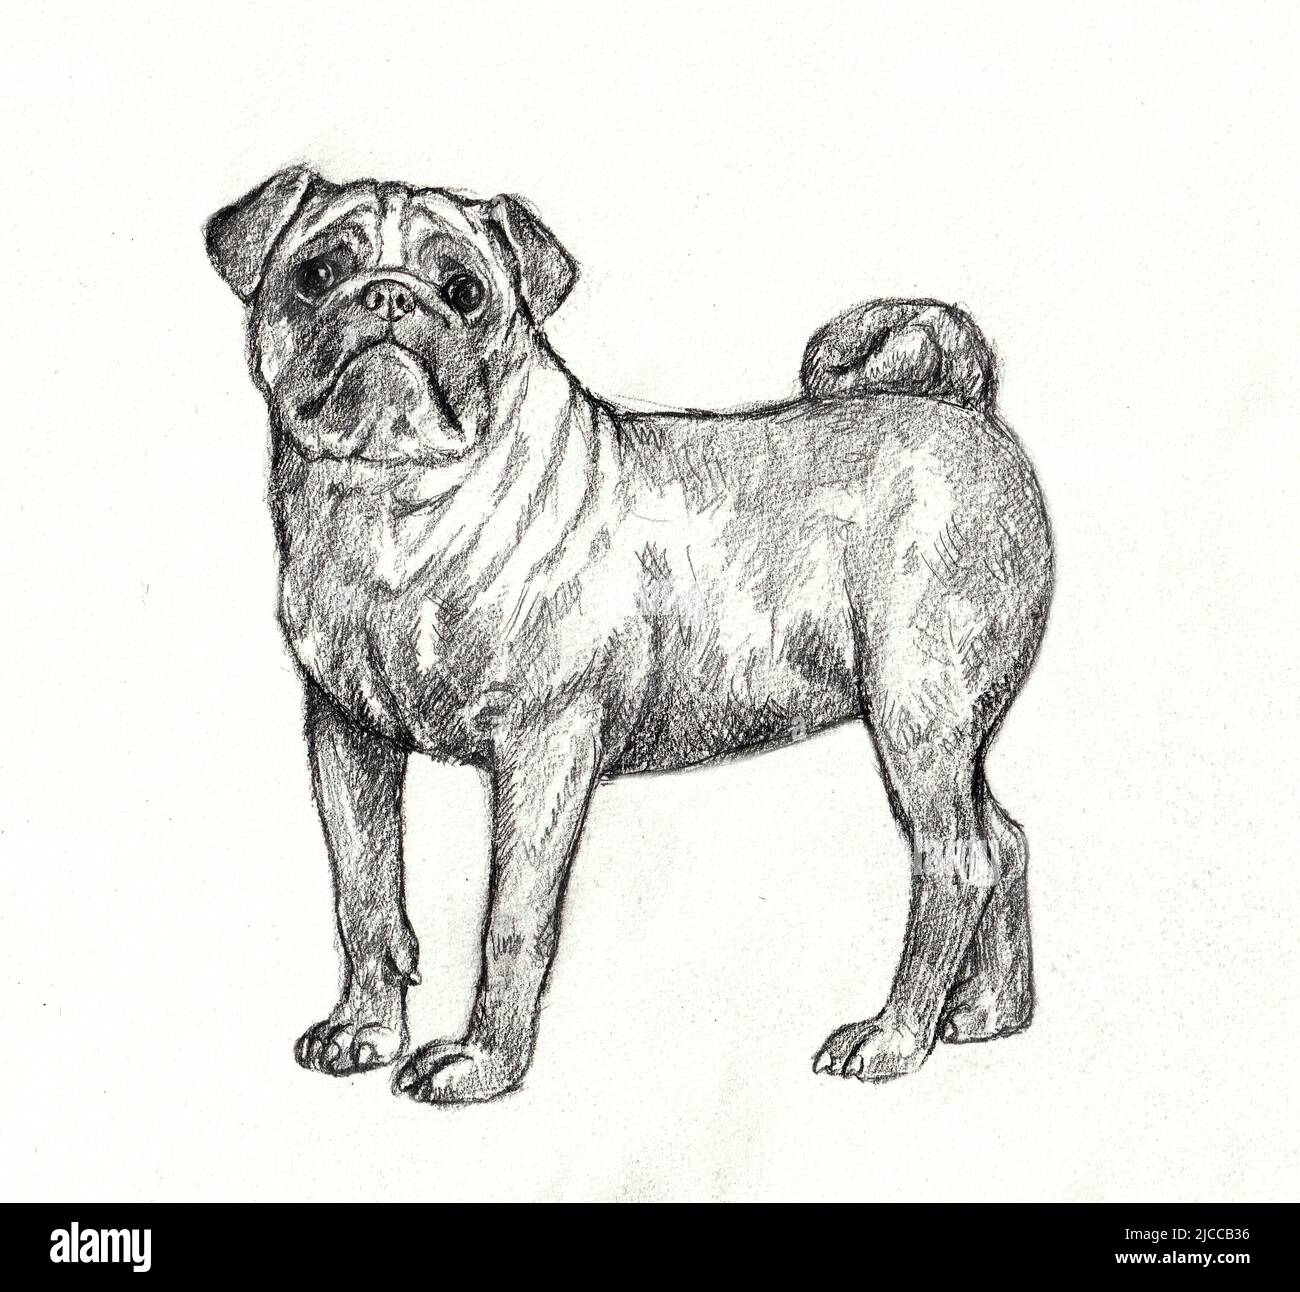 Dessin au crayon PUG. Illustration isolée avec un chien chinois. Banque D'Images